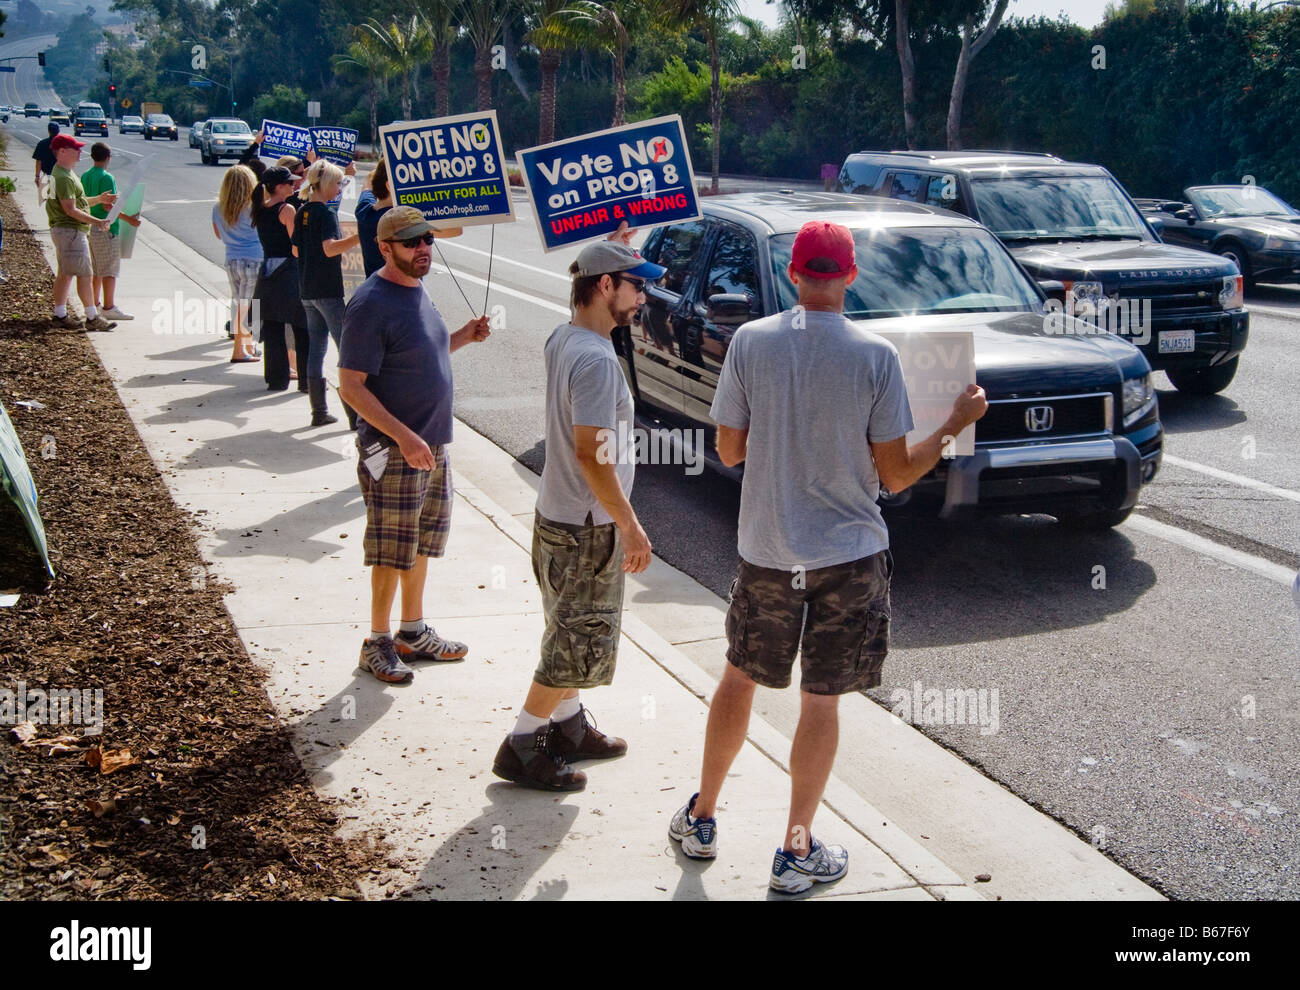 Demonstranten protestieren gegen Staat Stimmzettel-Proposition am Pacific Coast Highway in Laguna Niguel, CA, USA Stockfoto